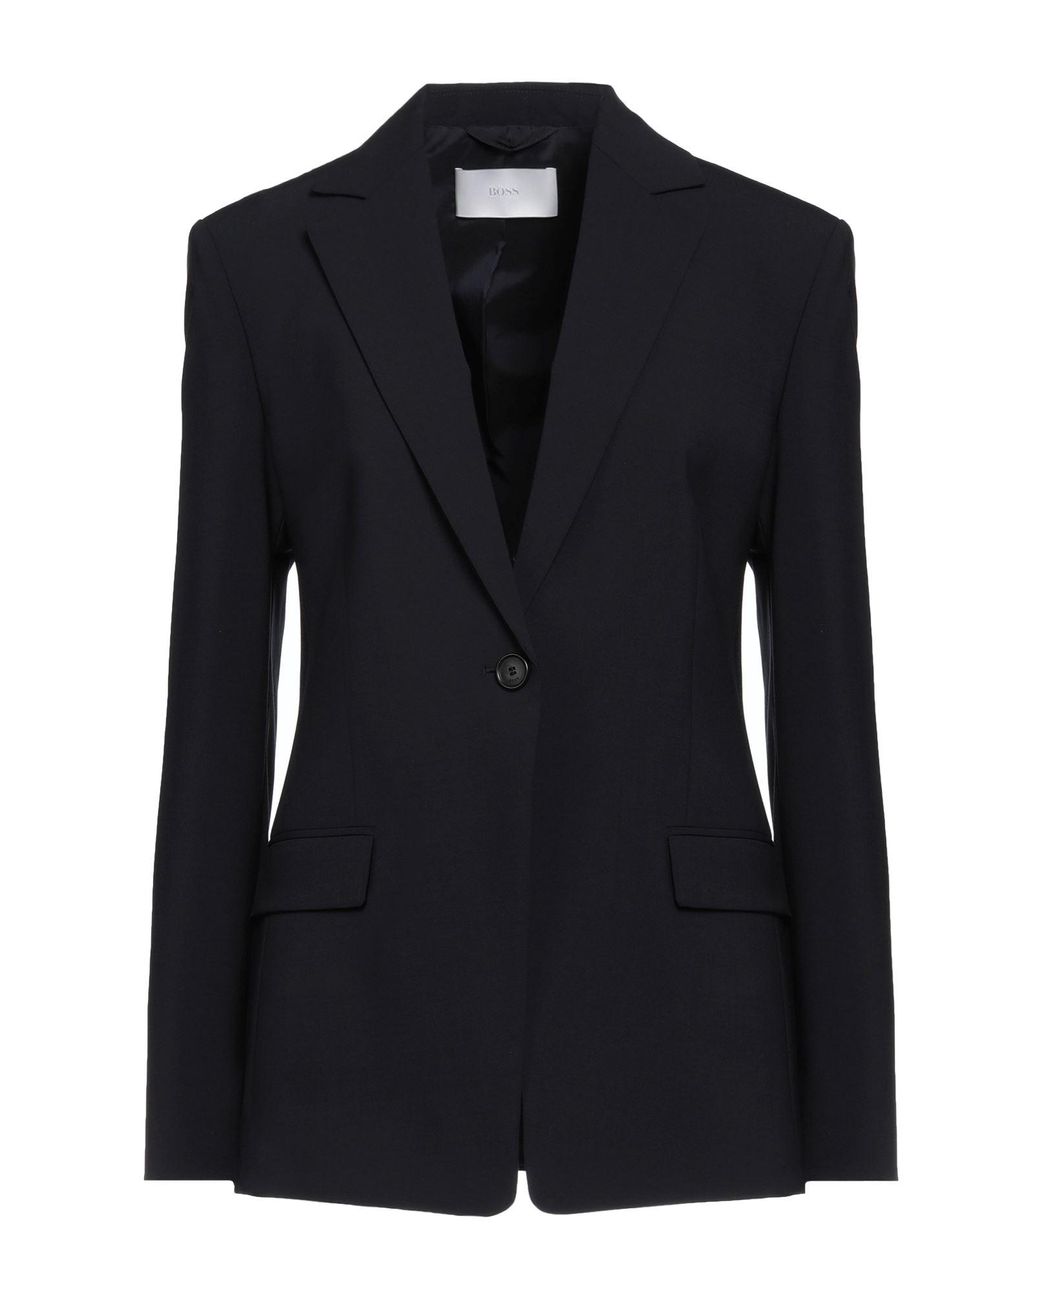 BOSS by HUGO BOSS Suit Jacket in Black | Lyst